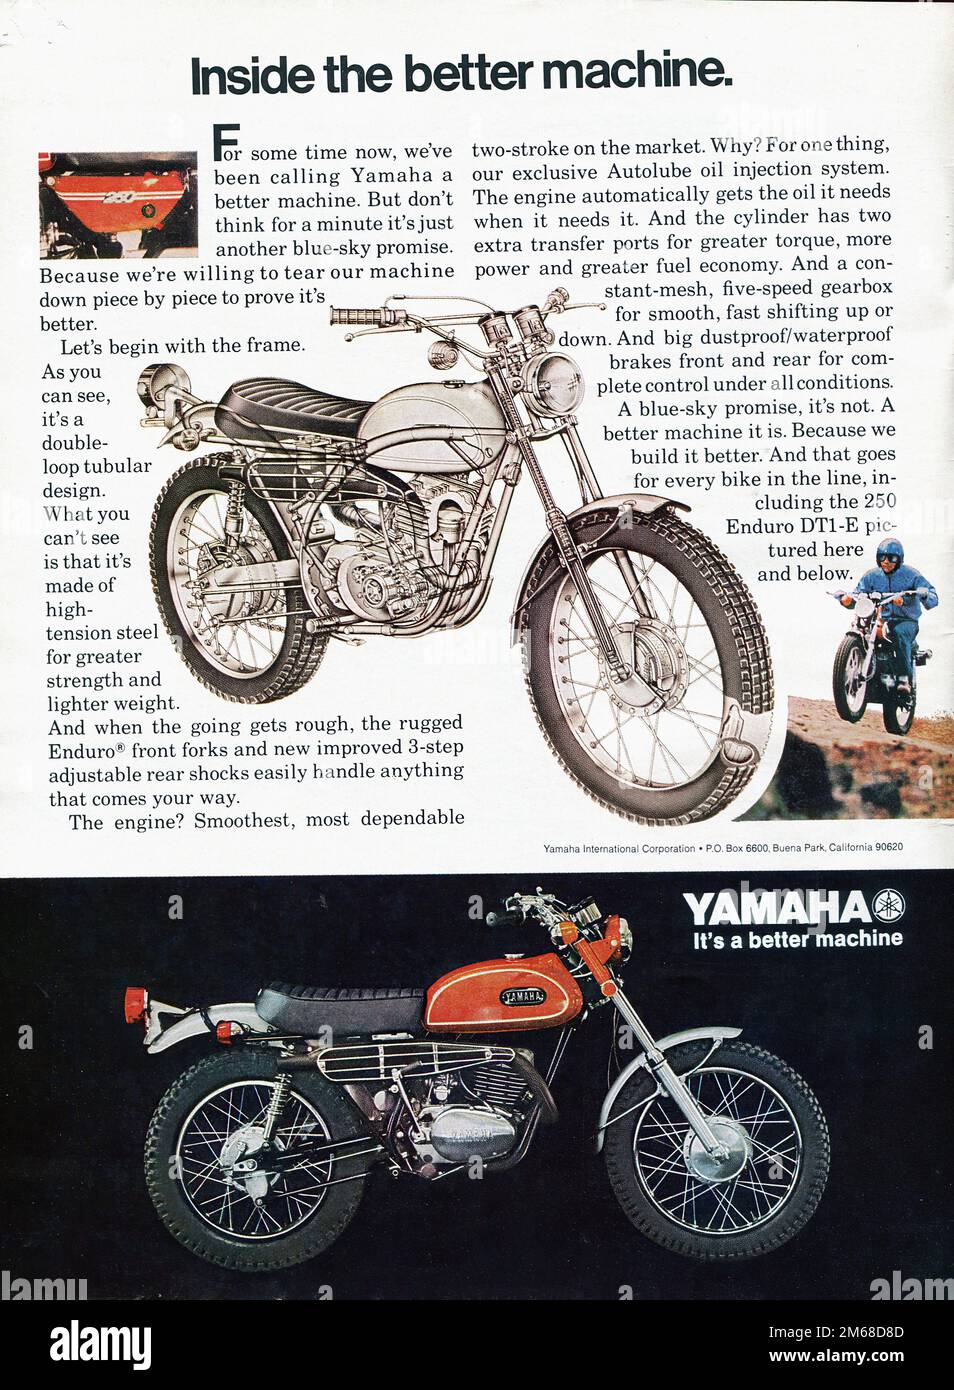 1969 Yamaha 250 cc Street Scrambler Enduro motorcycle vintage